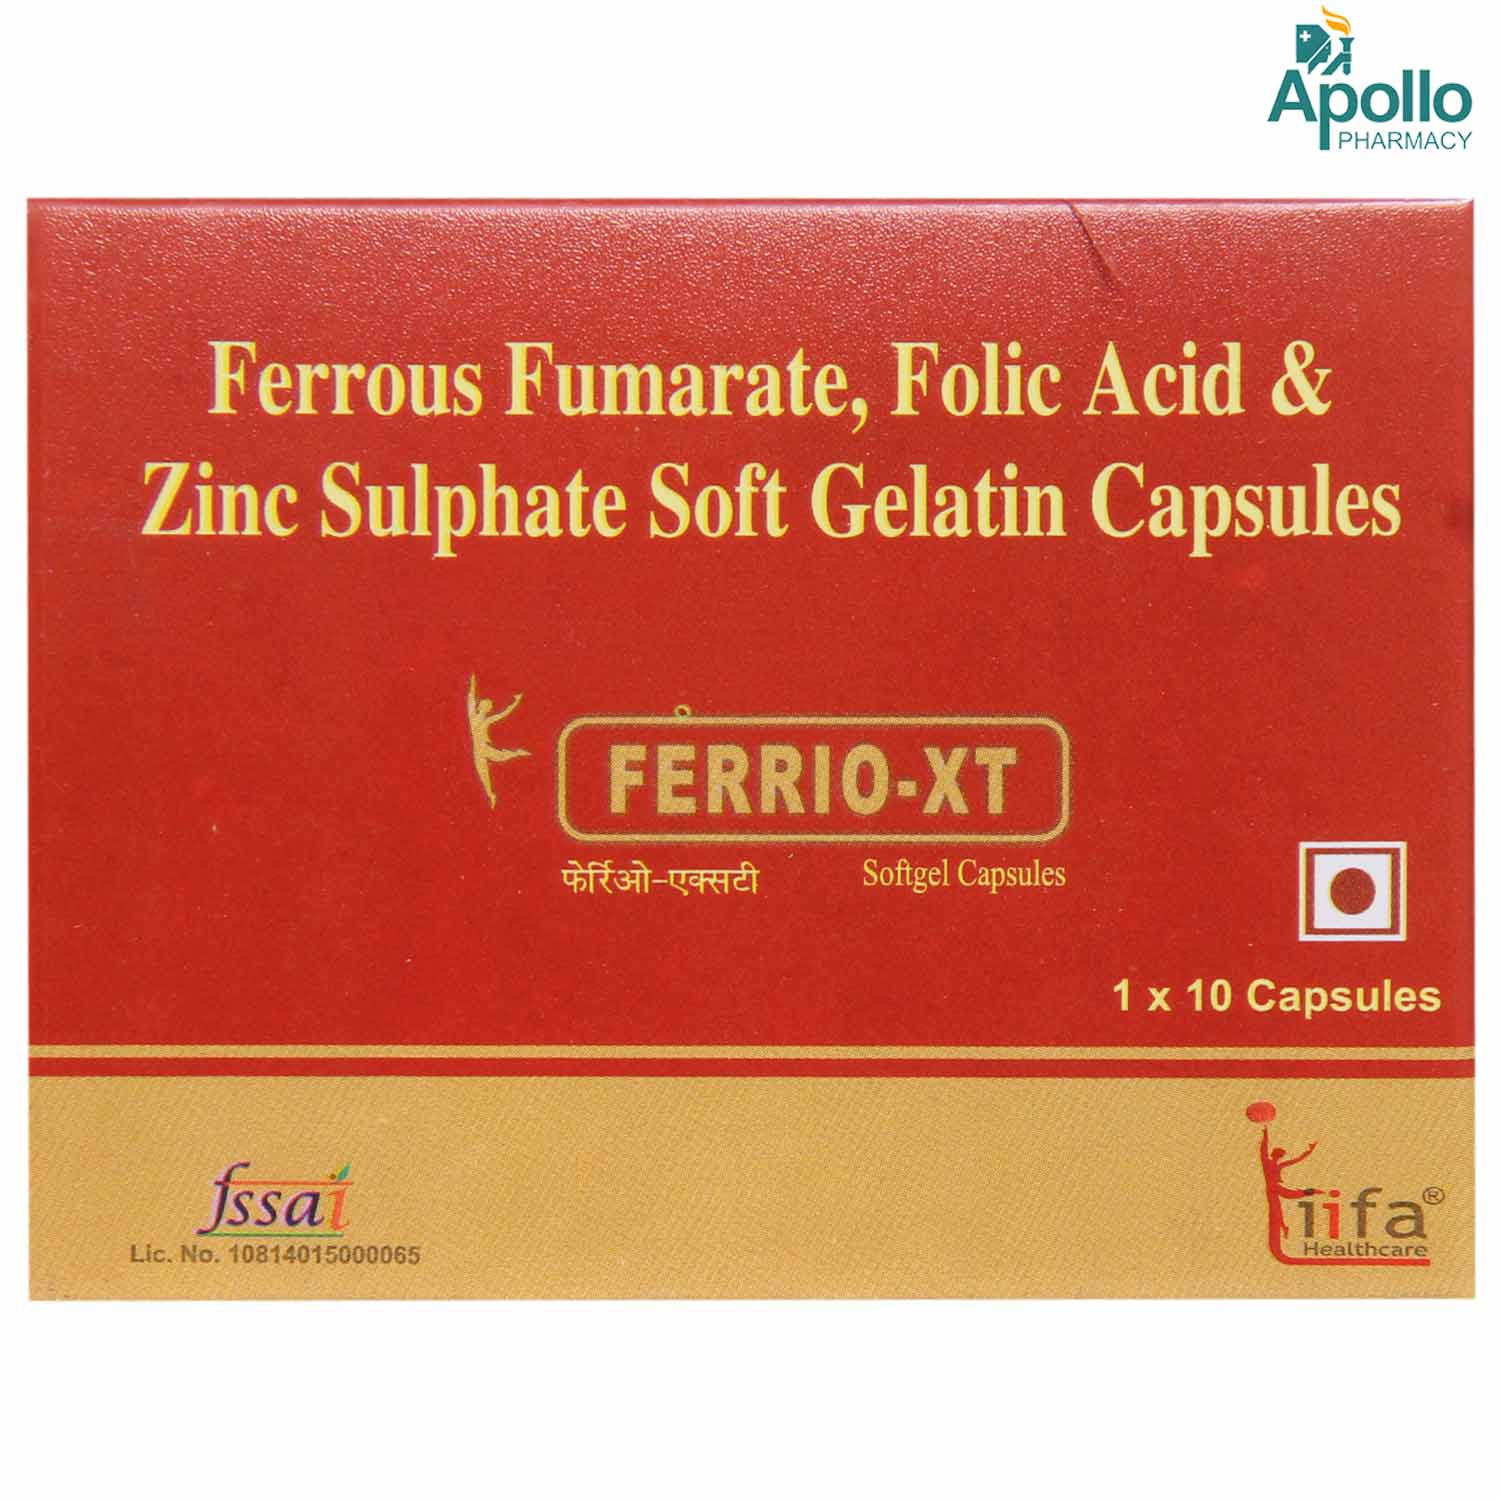 FERRIO XT CAPSULE 10'S, Pack of 10 CapsuleS